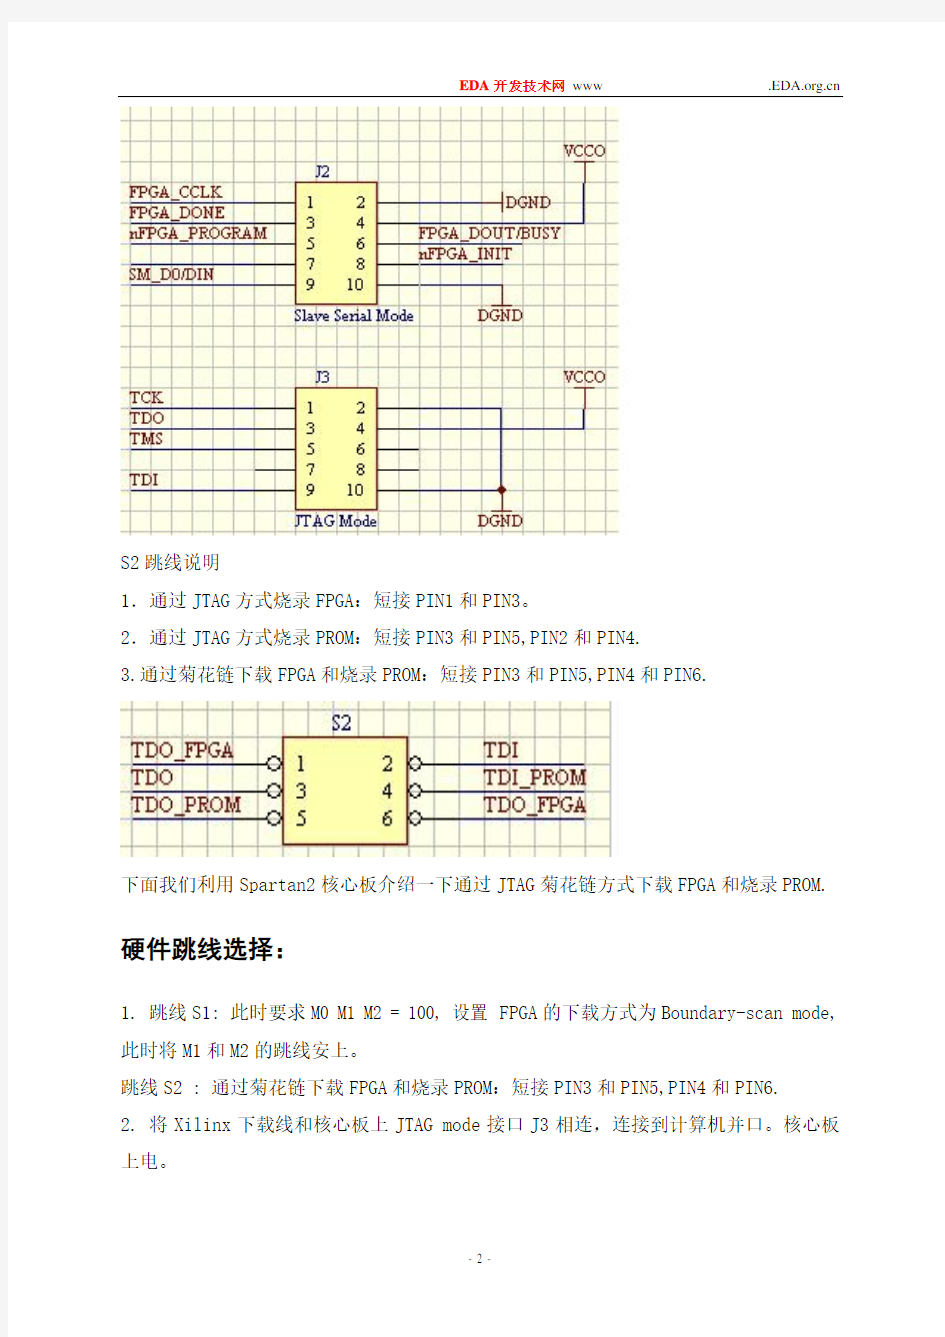 Xilinx FPGA下载烧写教程(超详细)